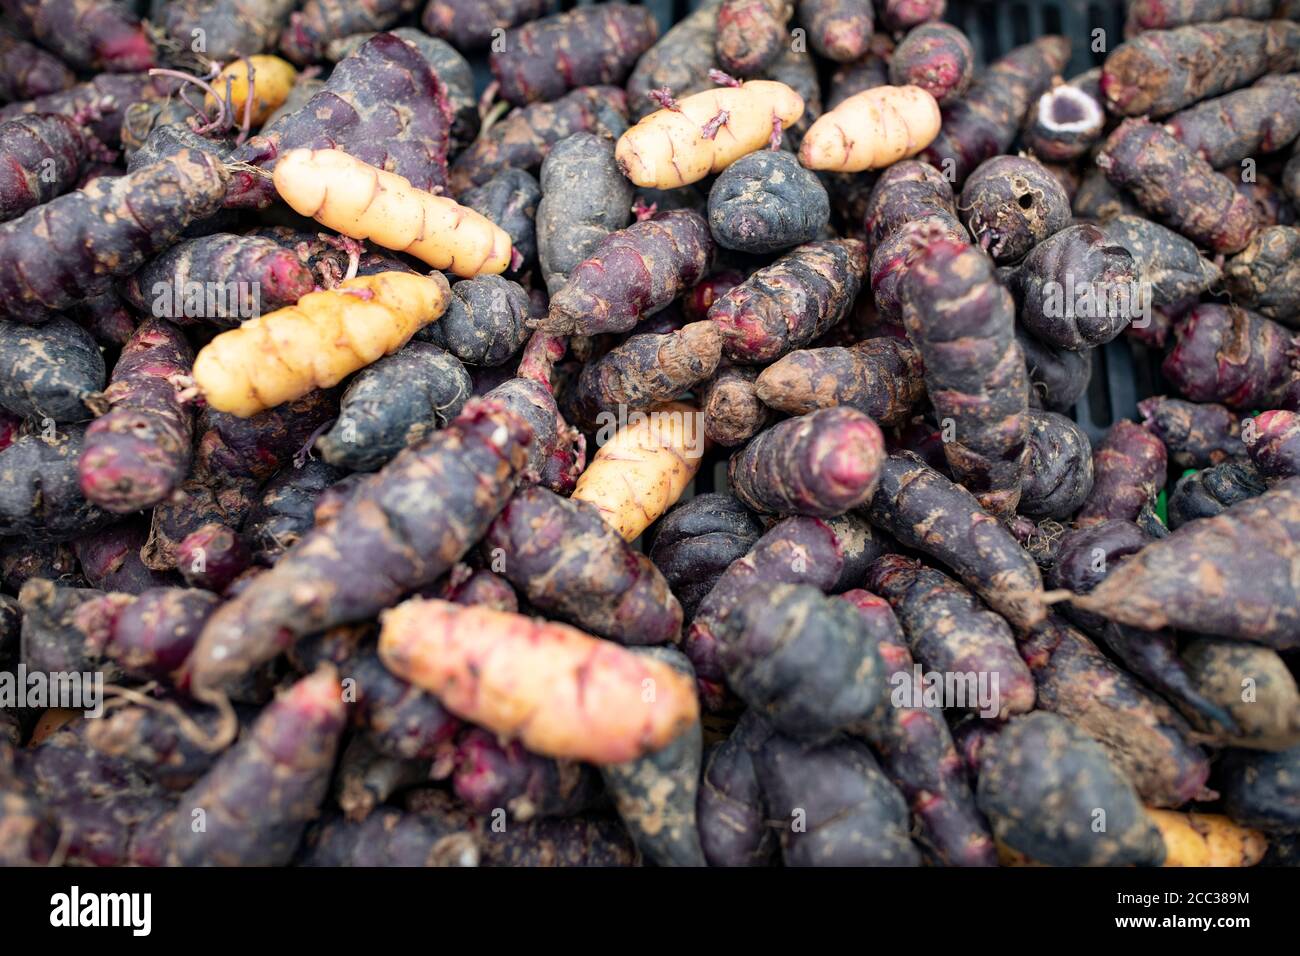 Oxalis tuberosa, Oca auf Spanisch, ist eine Knolle, die in Peru, Südamerika angebaut wird. Stockfoto